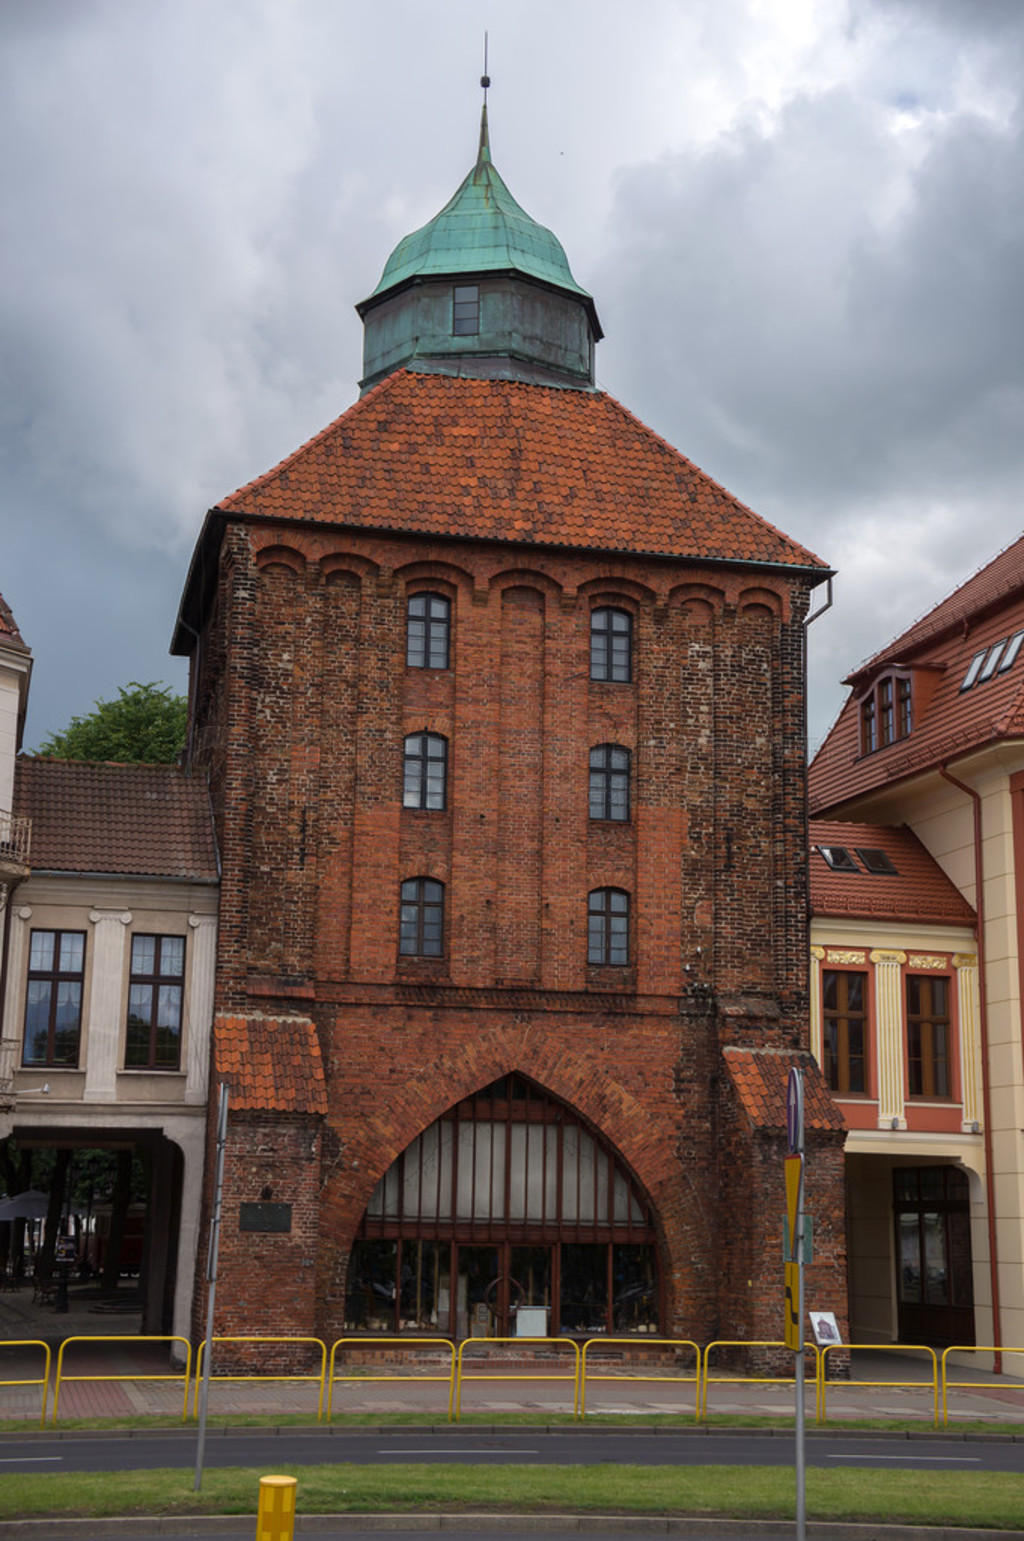 den nya porten (nowa brama) 1300-talet i slupsk, Polen slupsk